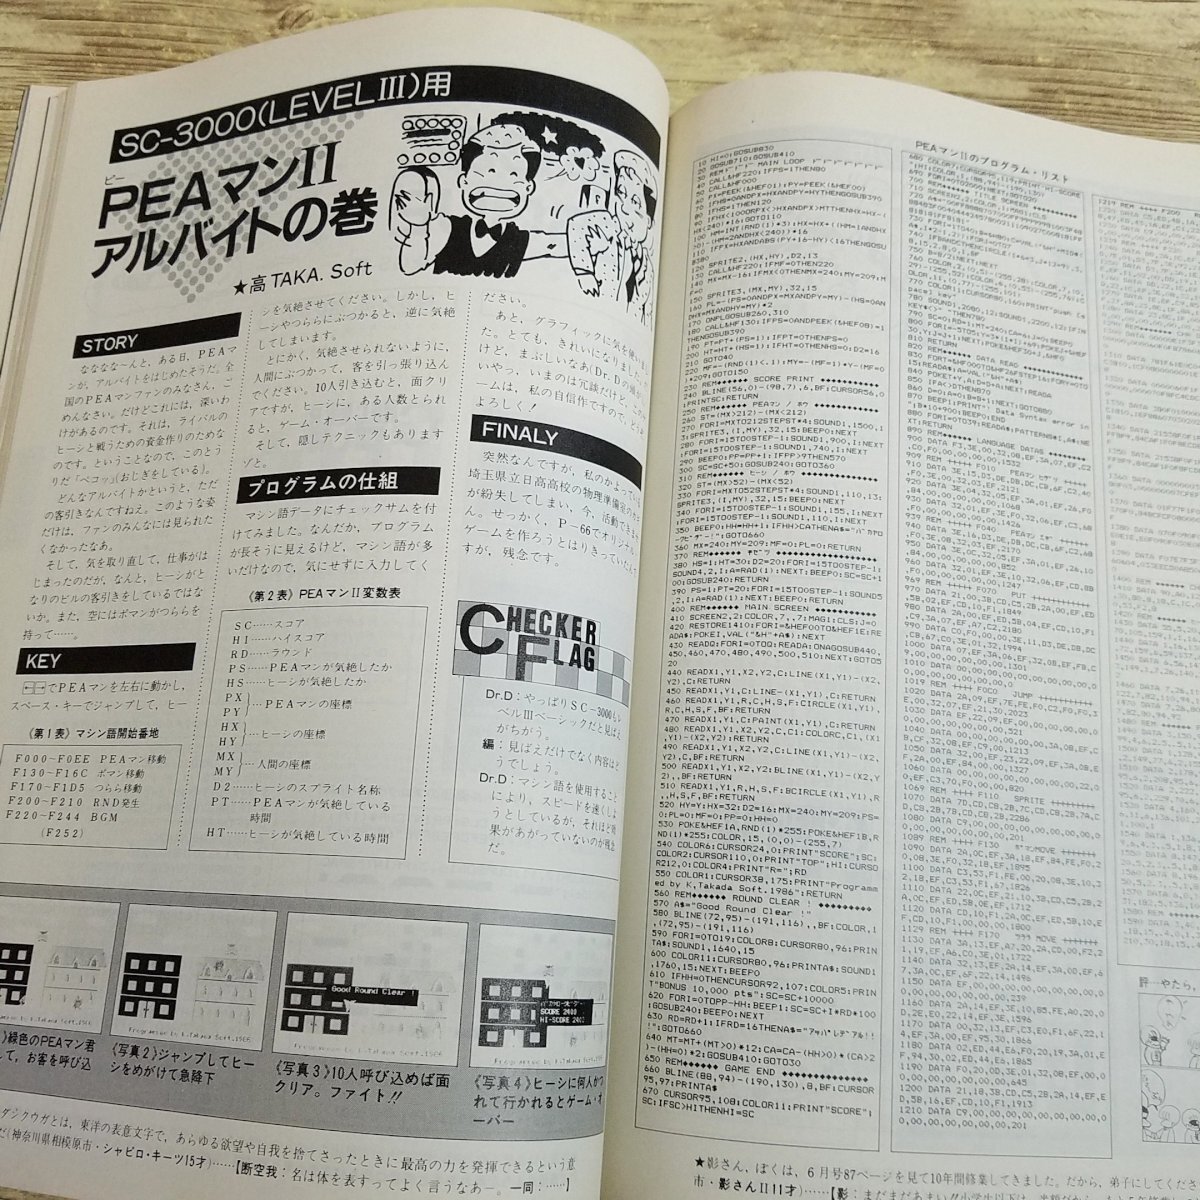 パソコン雑誌[マイコンBASICマガジン 1986年7月号] プログラムリスト52本 PCゲーム レトロPC レトロゲーム ファミコンでゲームを作ろう【送_画像9